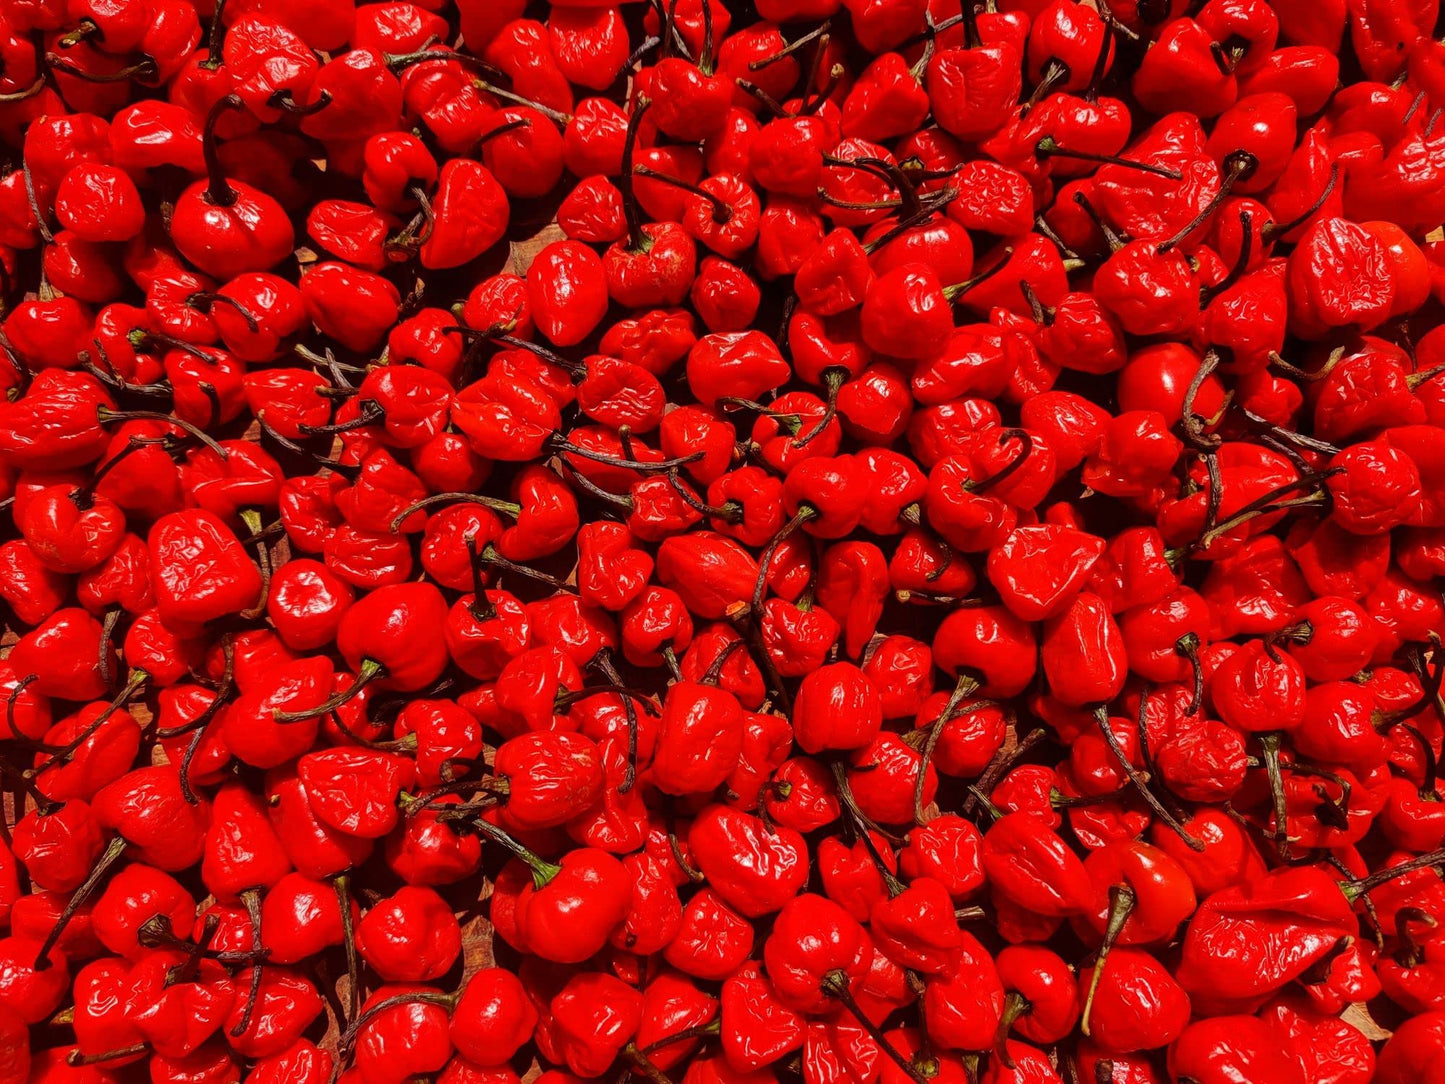 Chilli Plants - 'Scotch Bonnet Red' - 2 x Full Plants in 9cm Pots